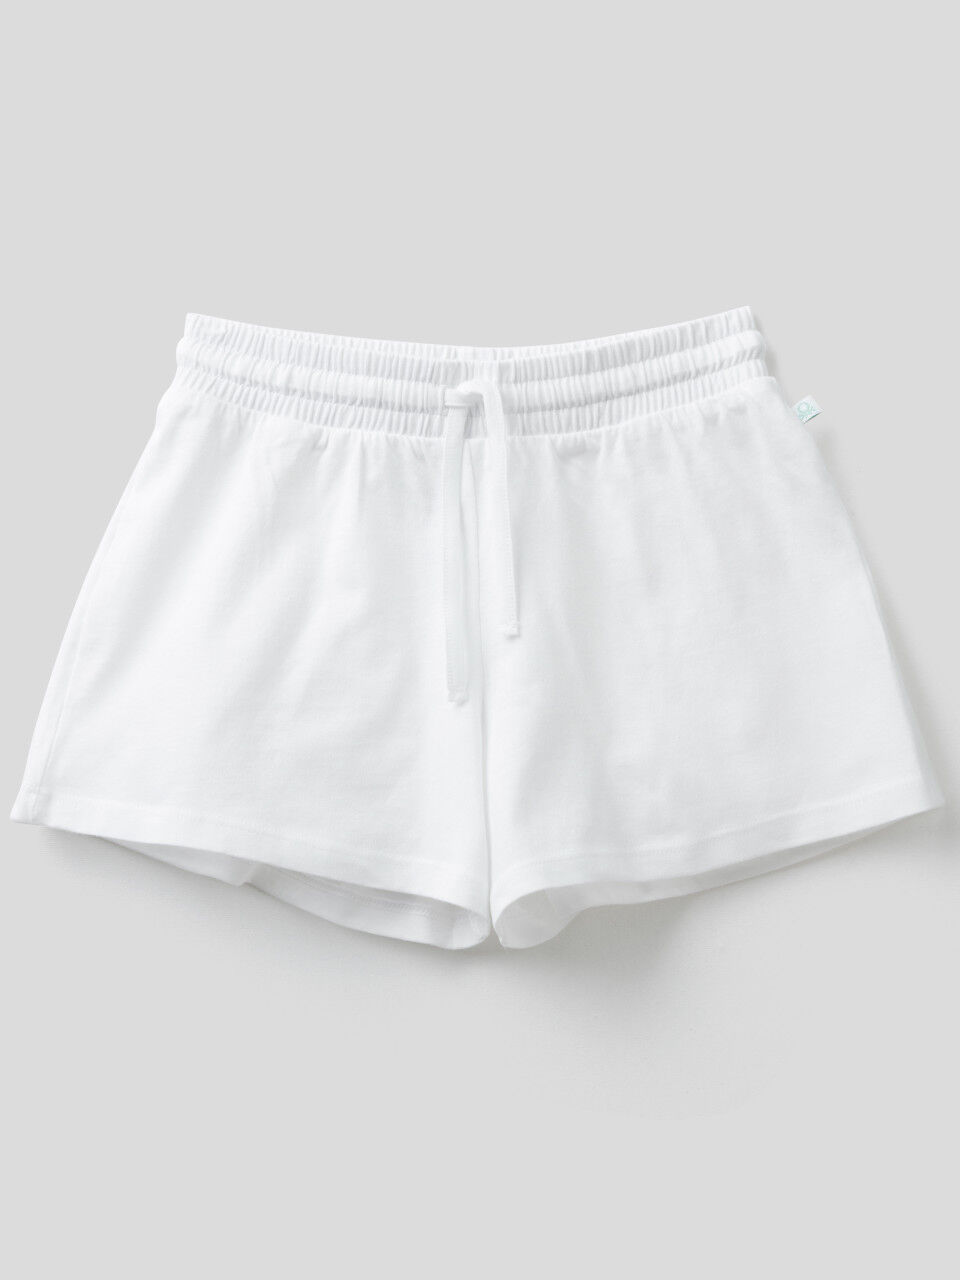 100% cotton shorts